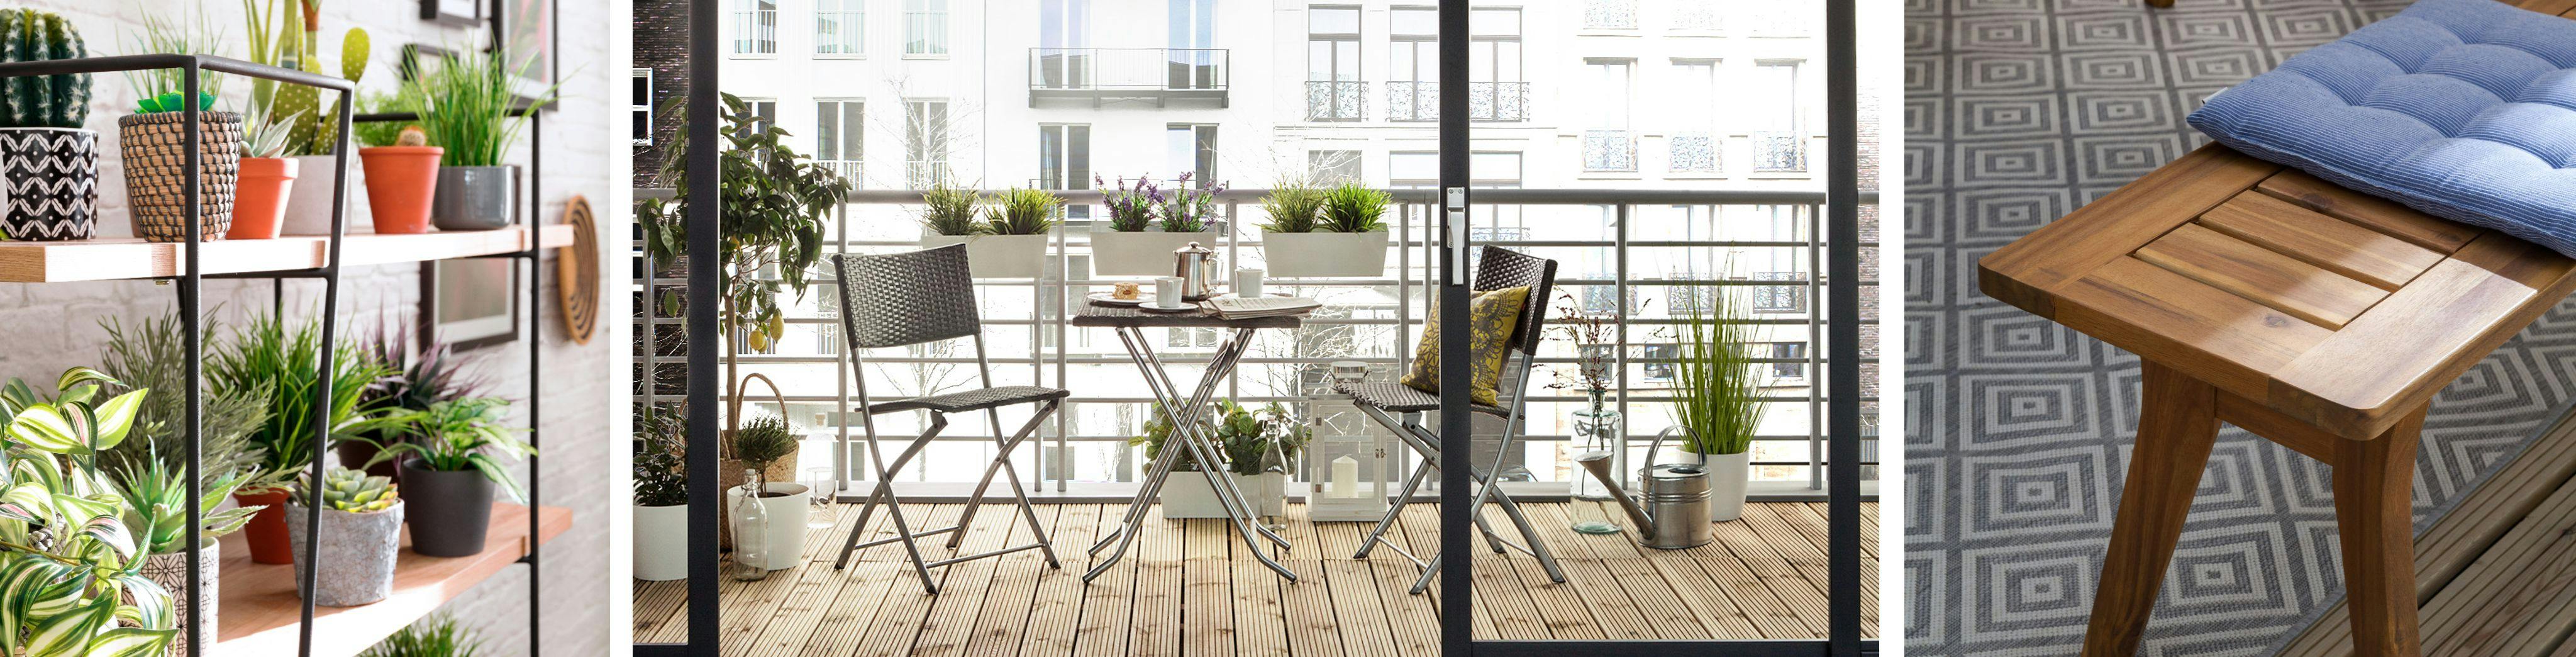 Petit balcon : conseils aménagement pour profiter du beau temps